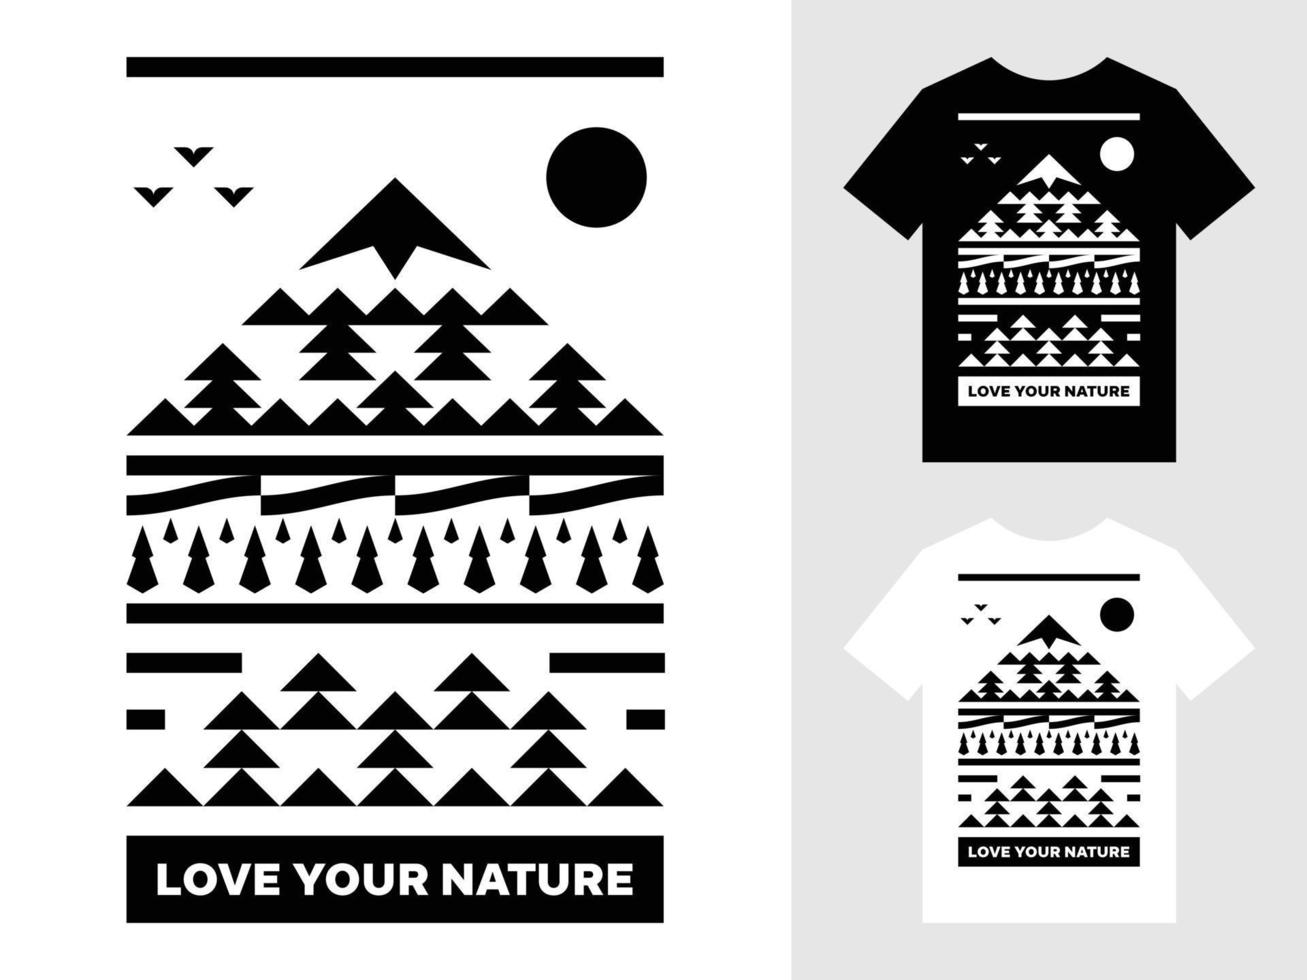 aimez votre conception de t-shirt de logo de paysage de montagne nature vecteur